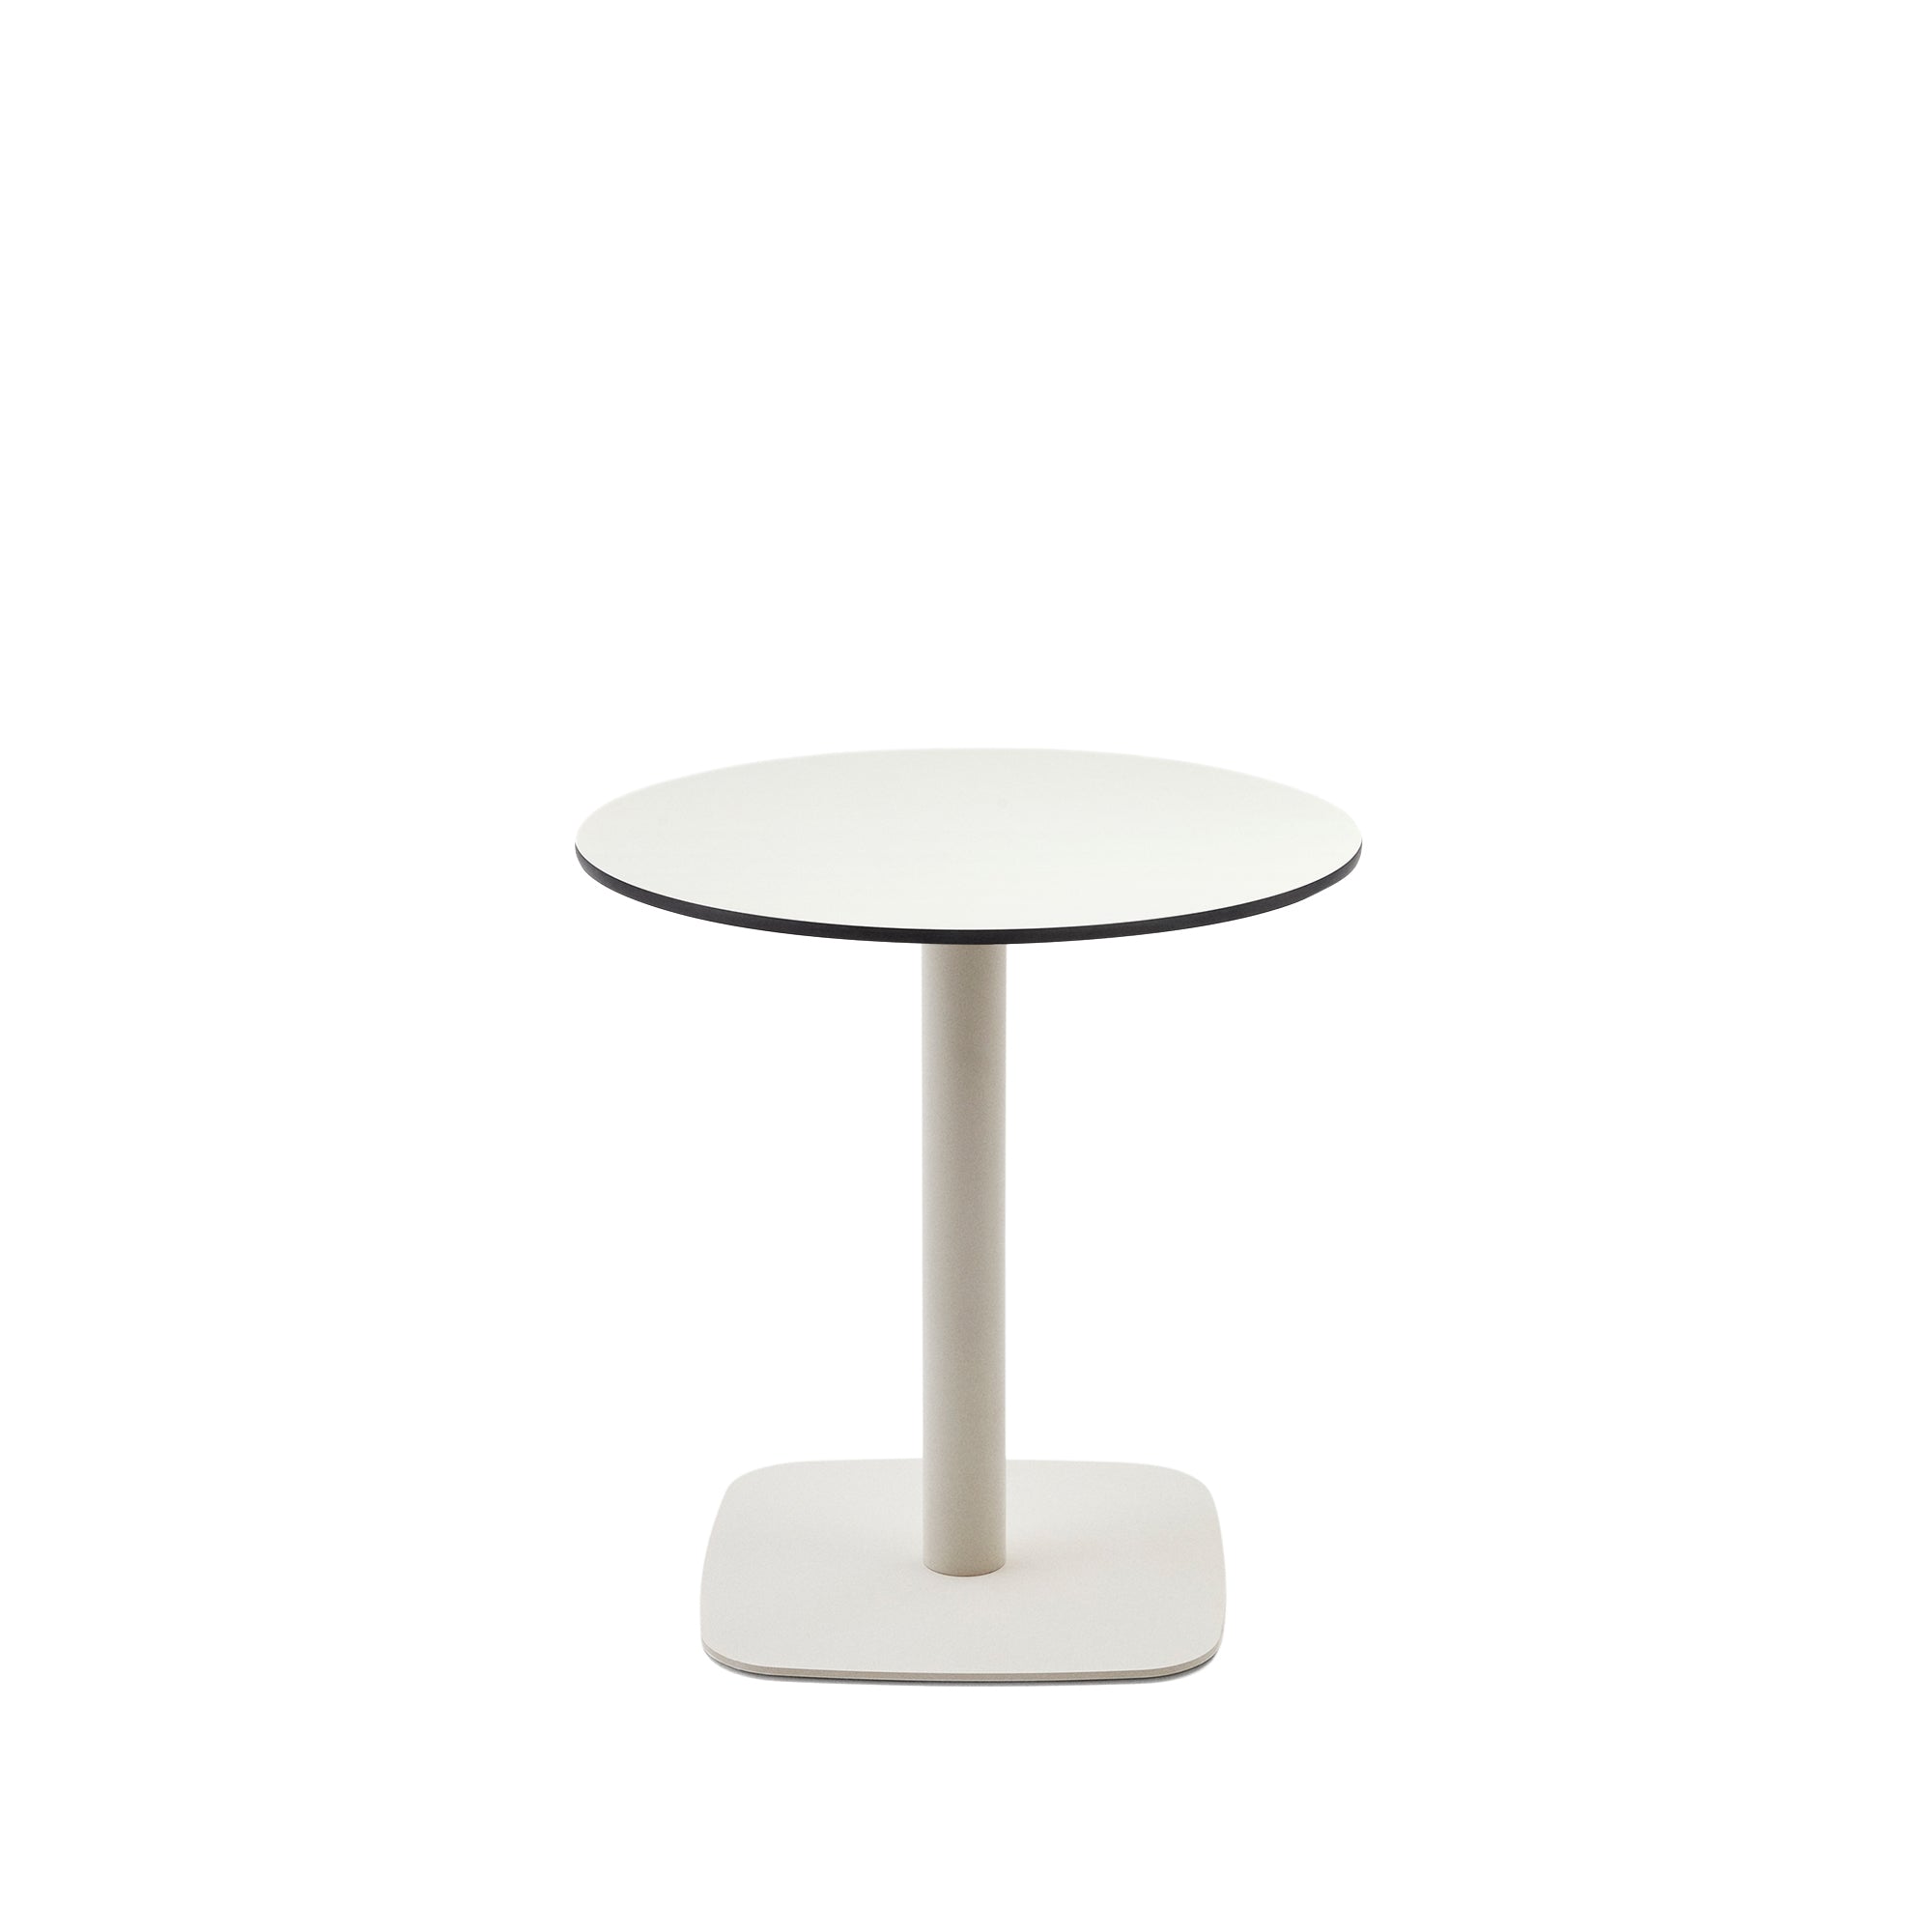 Dina kerek kültéri asztal fehér színben, fehérre festett, fém jogi elemekkel, Ø 68x70cm